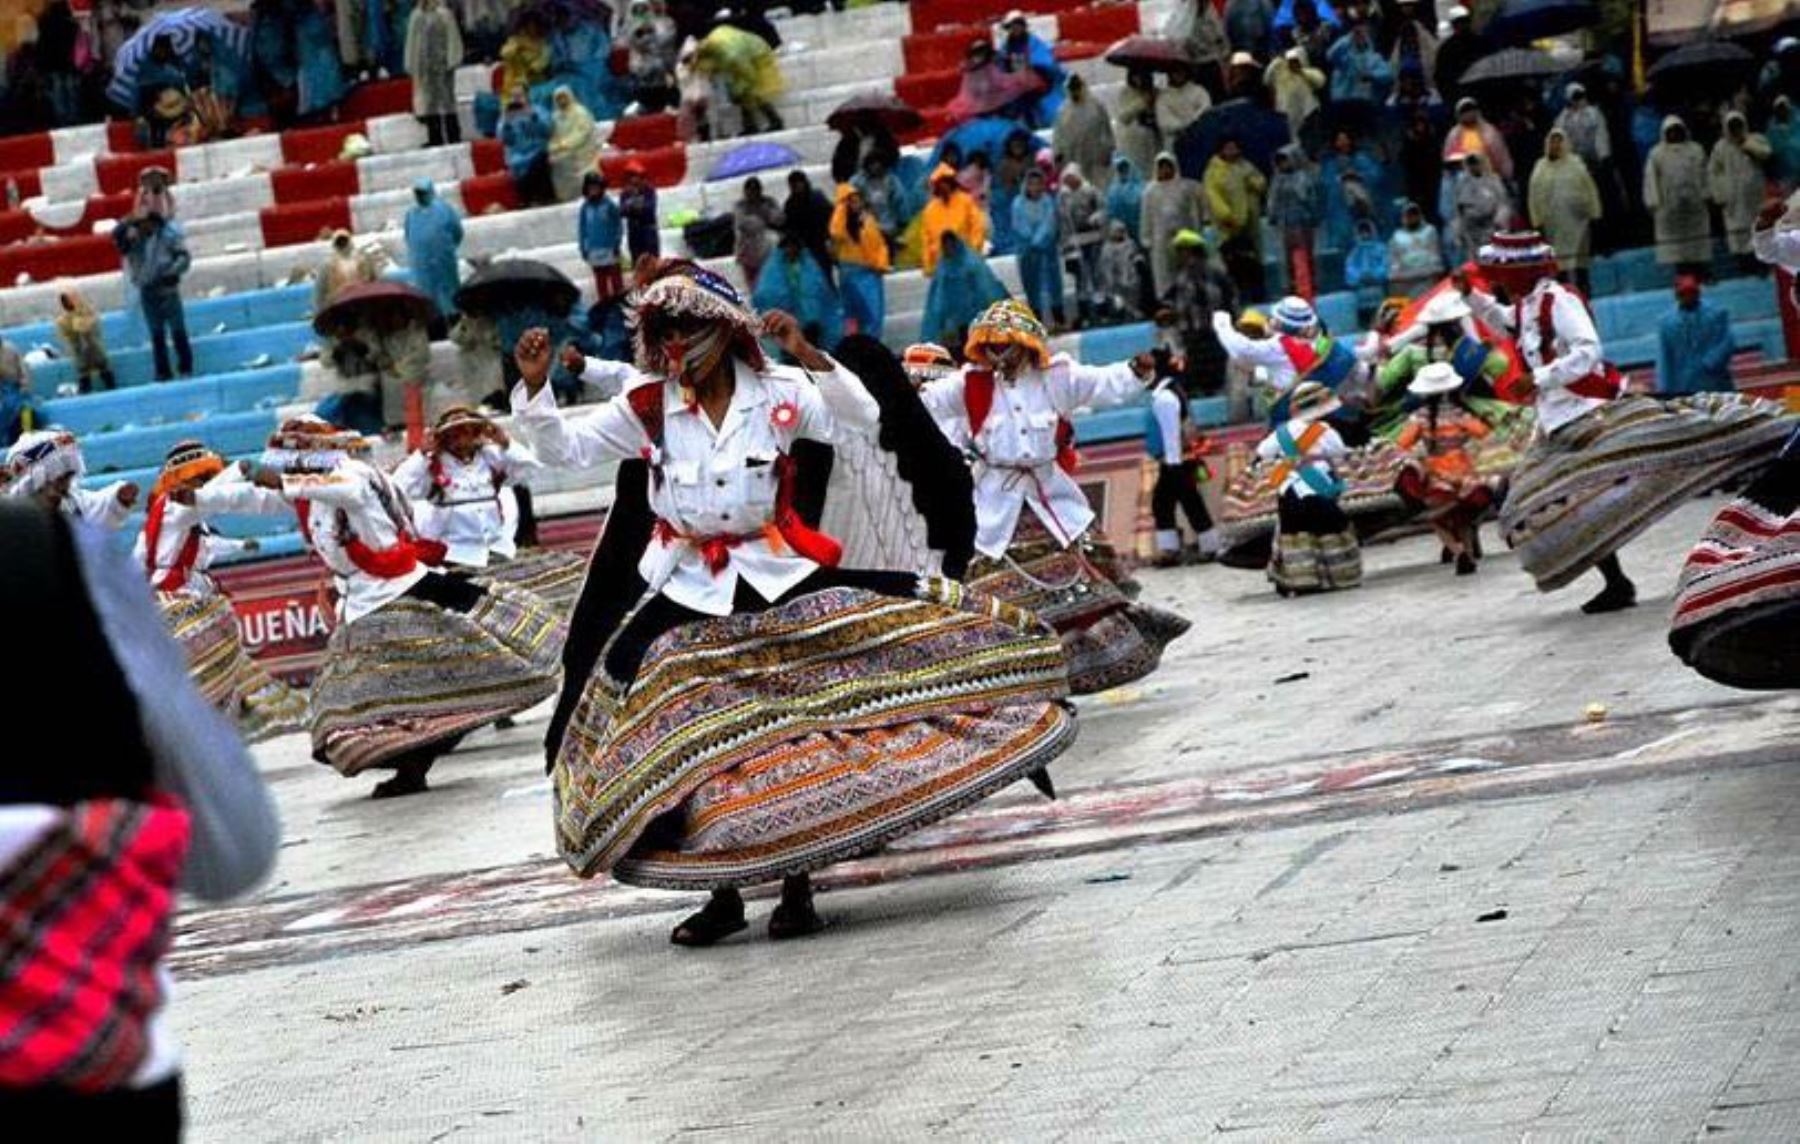 Danza el Wititi participó de Parada y Veneración en honor a la Virgen de la Candelaria de Puno. ANDINA